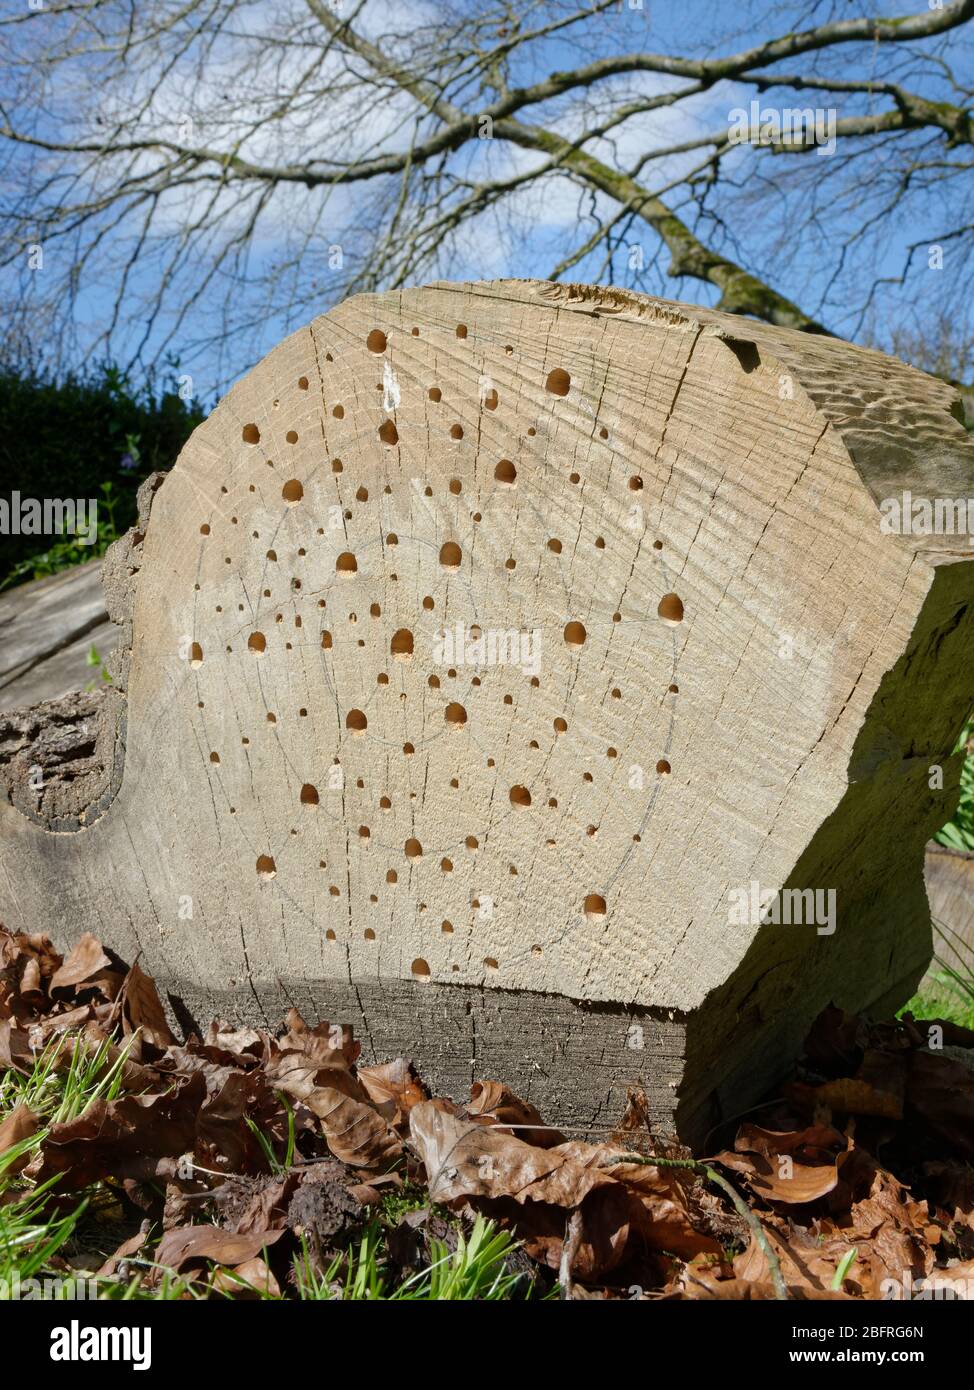 Insektenhotel, das durch Bohrungen unterschiedlicher Größe in einem großen Stück Holz, Teil einer gefallenen, gesägten Zeder, Wiltshire Garden, Großbritannien, April, geschaffen wurde. Stockfoto